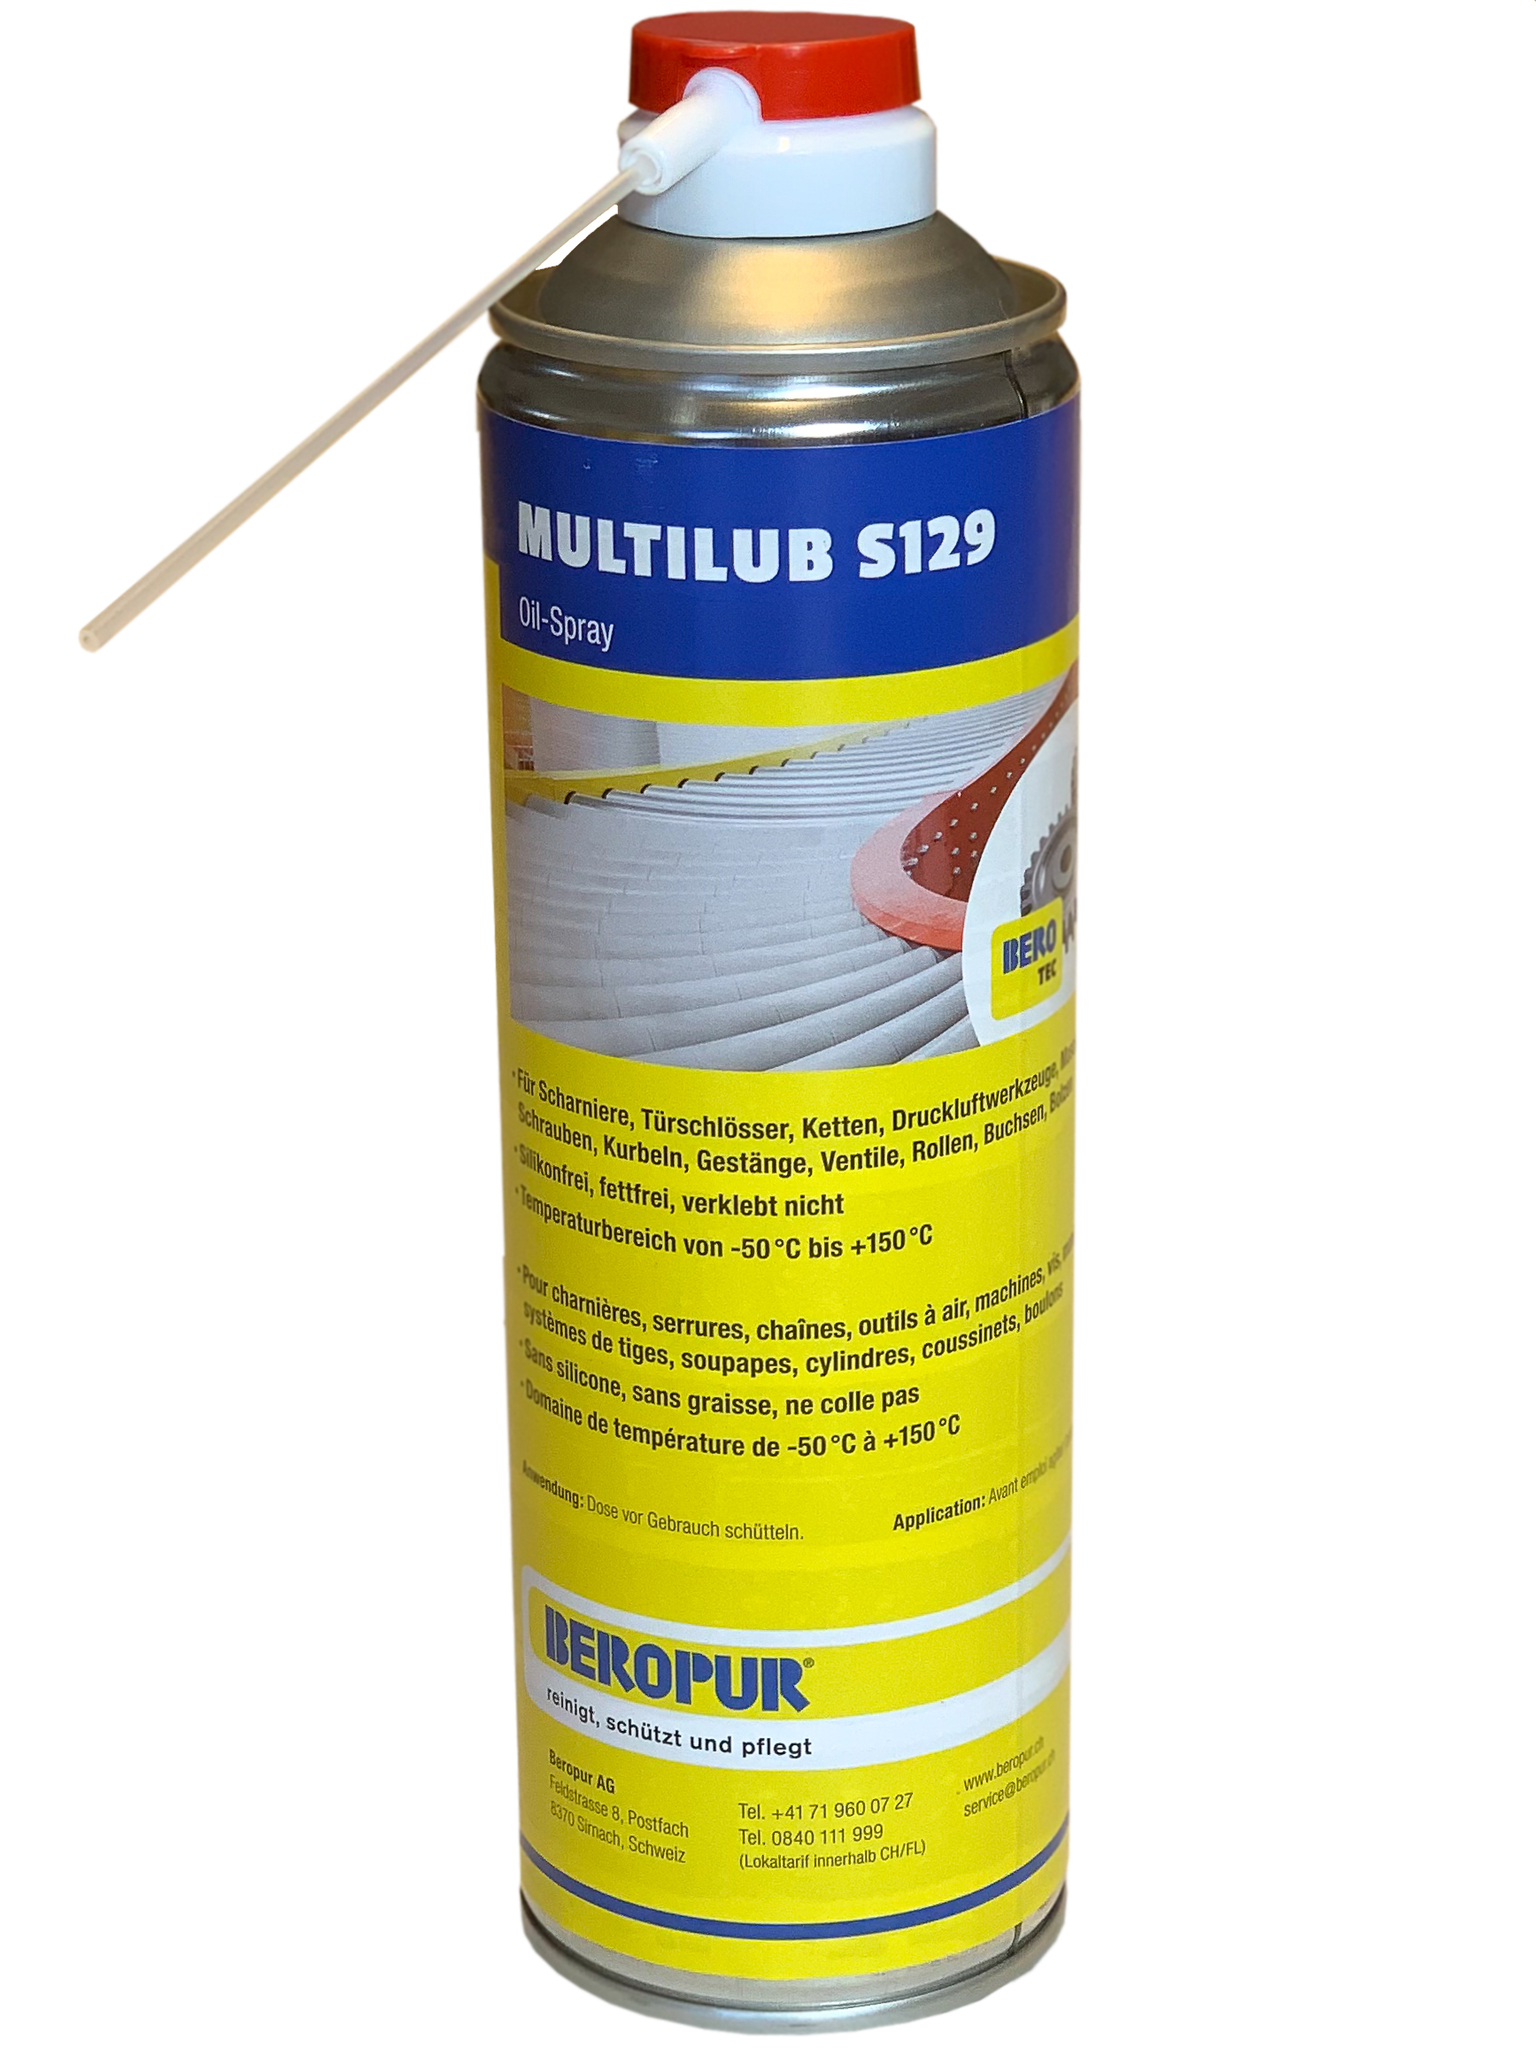 Multilub S129